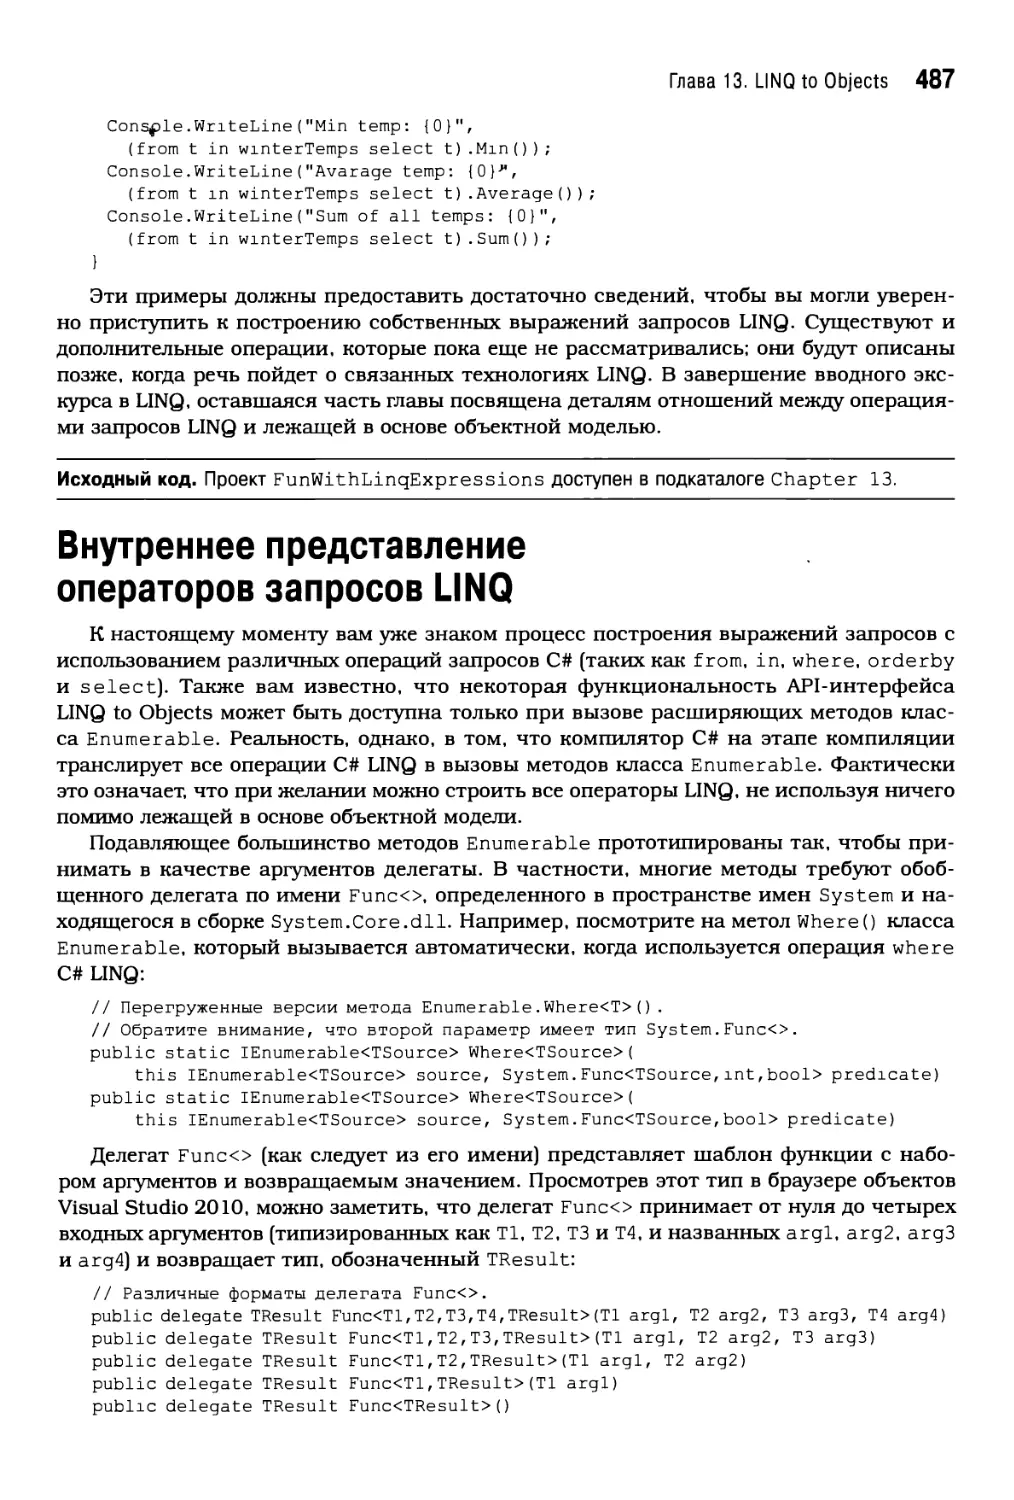 Внутреннее представление операторов запросов LINQ